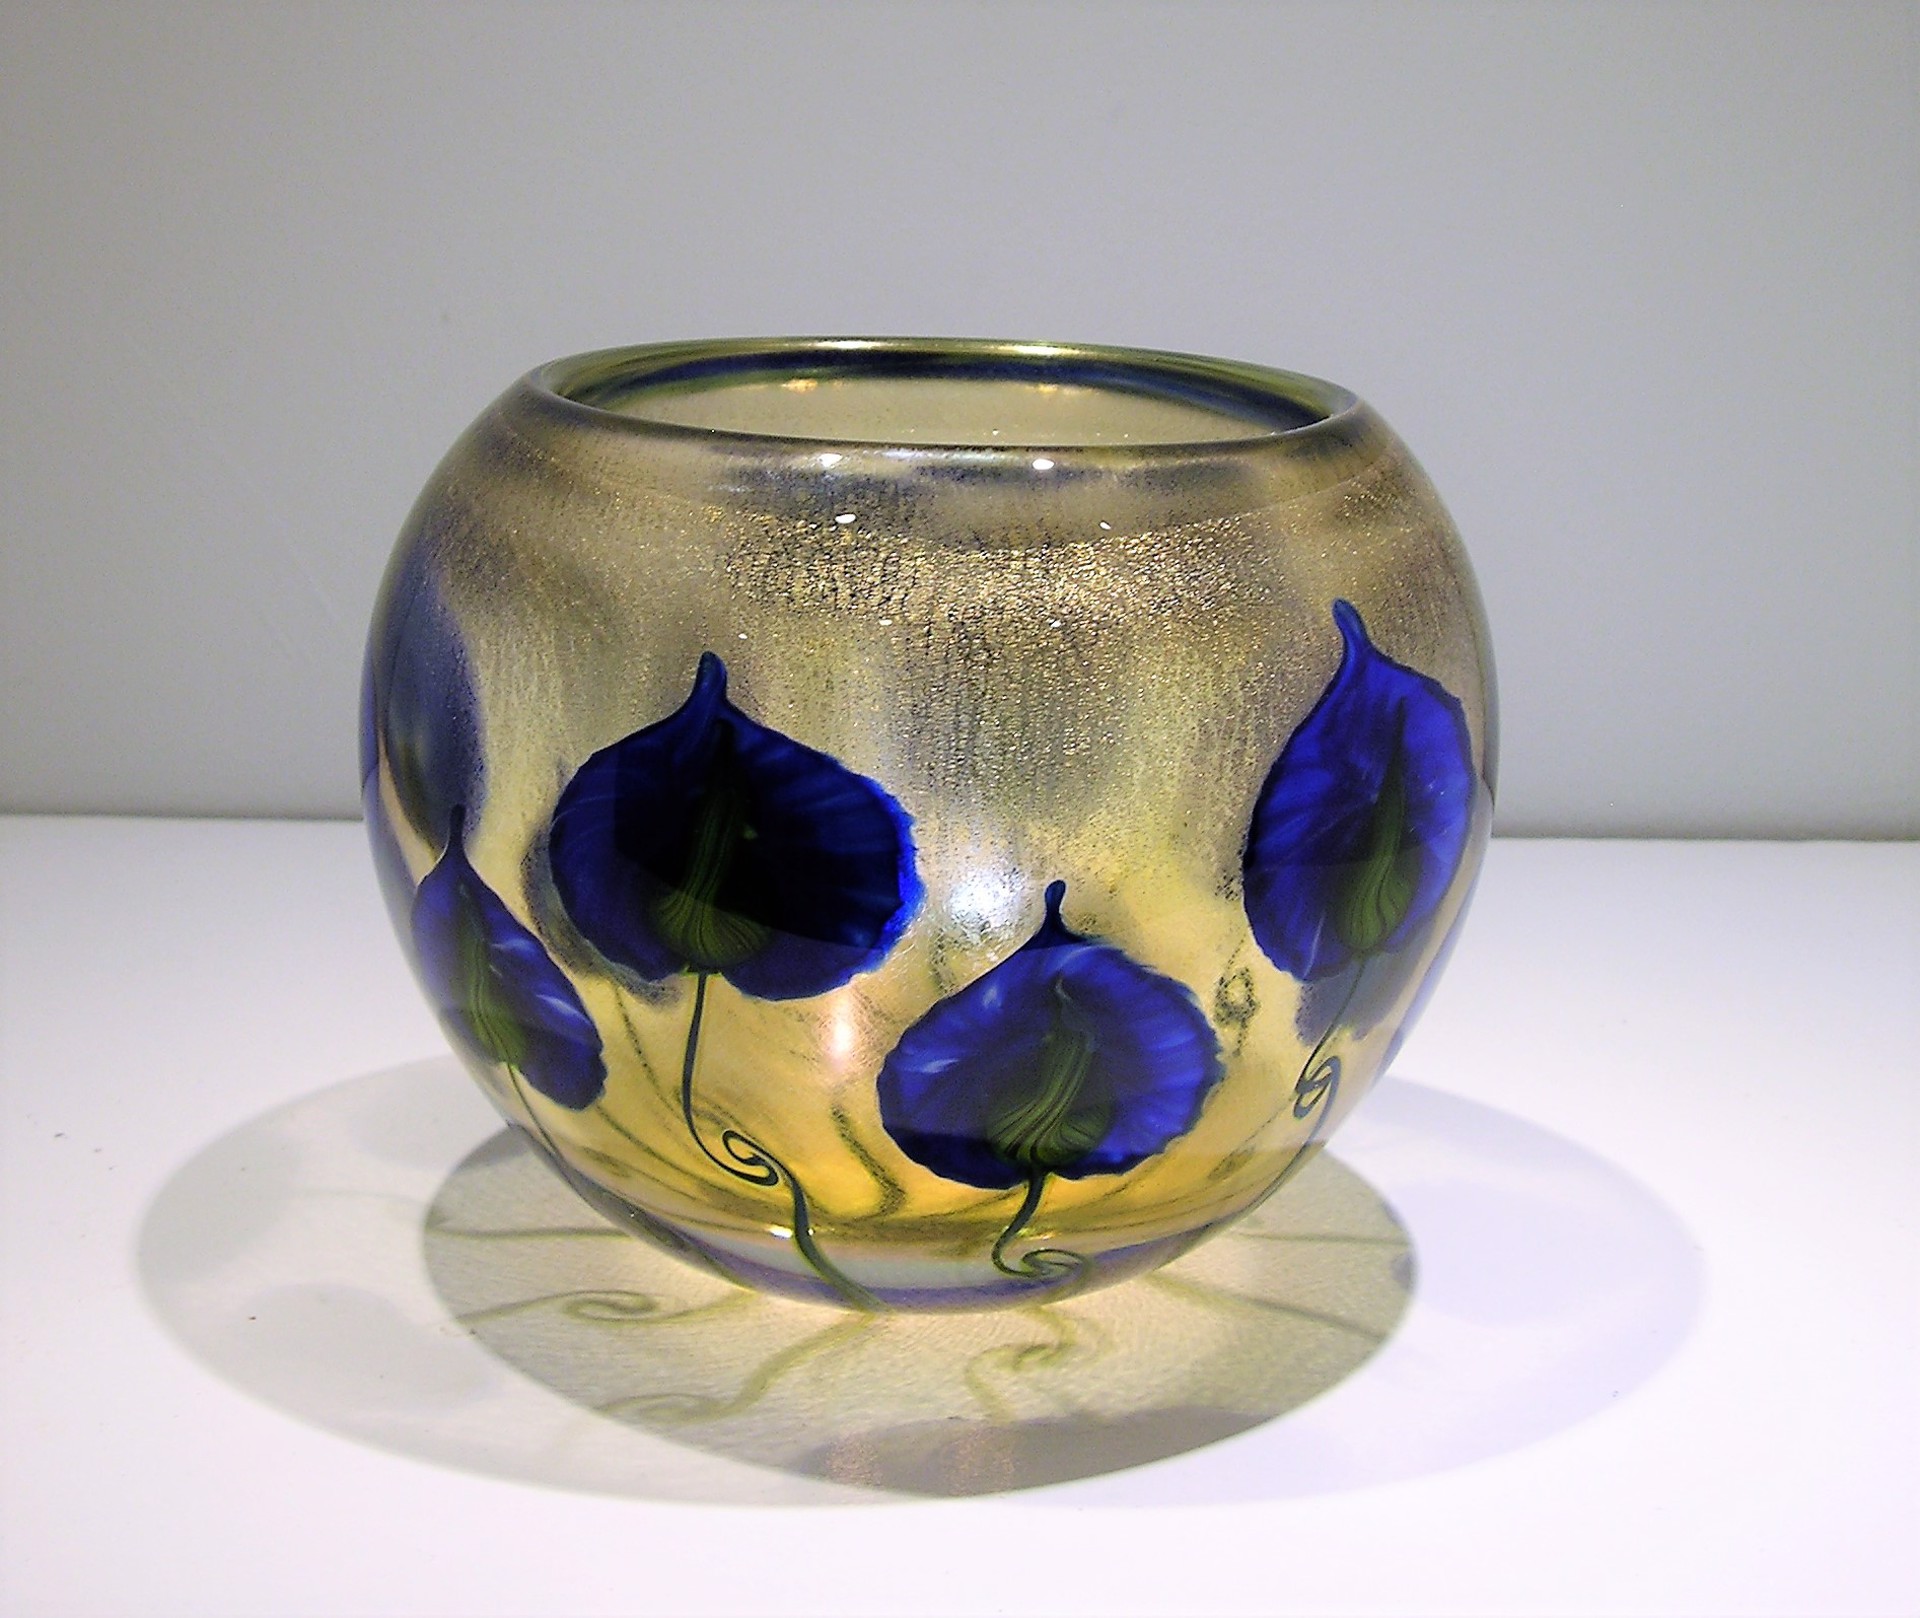 Sunset Bowl w/ Blue Cobalt Anthuriums by Daniel Lotton